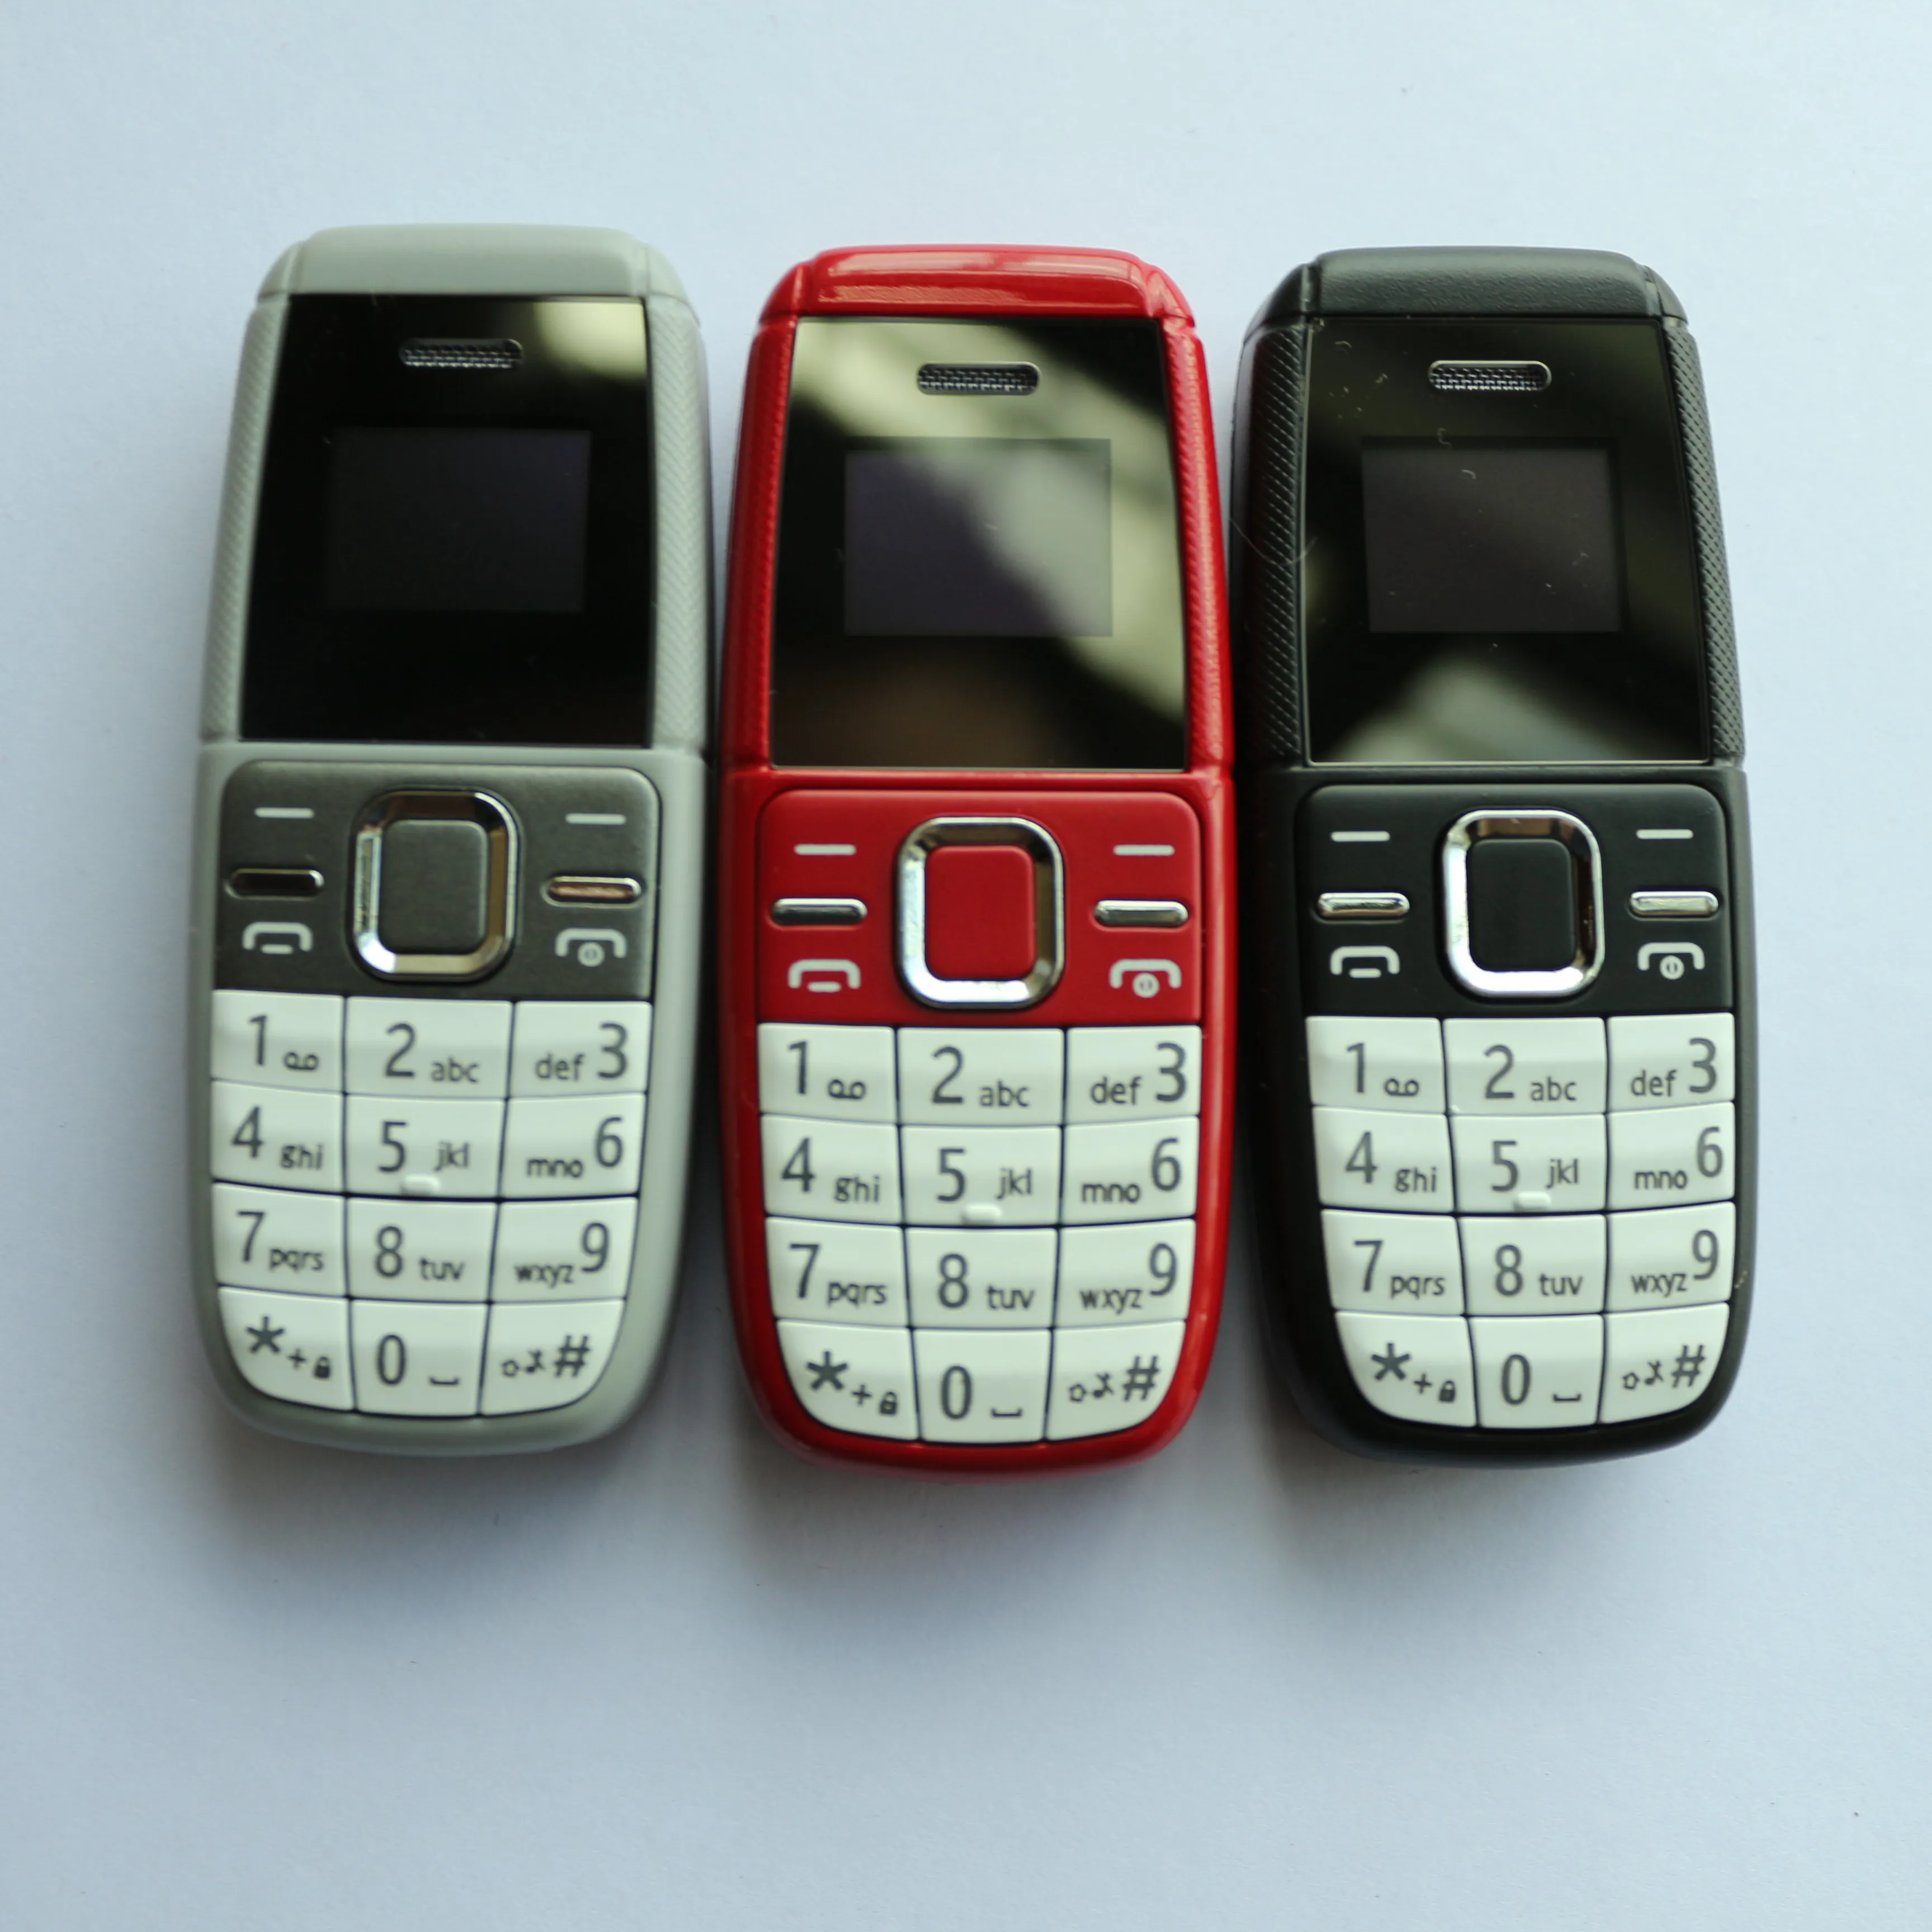 BM200 mini téléphone 2G bar fonctionnalités téléphone Mobile clés pour les personnes âgées clés anglaises s1